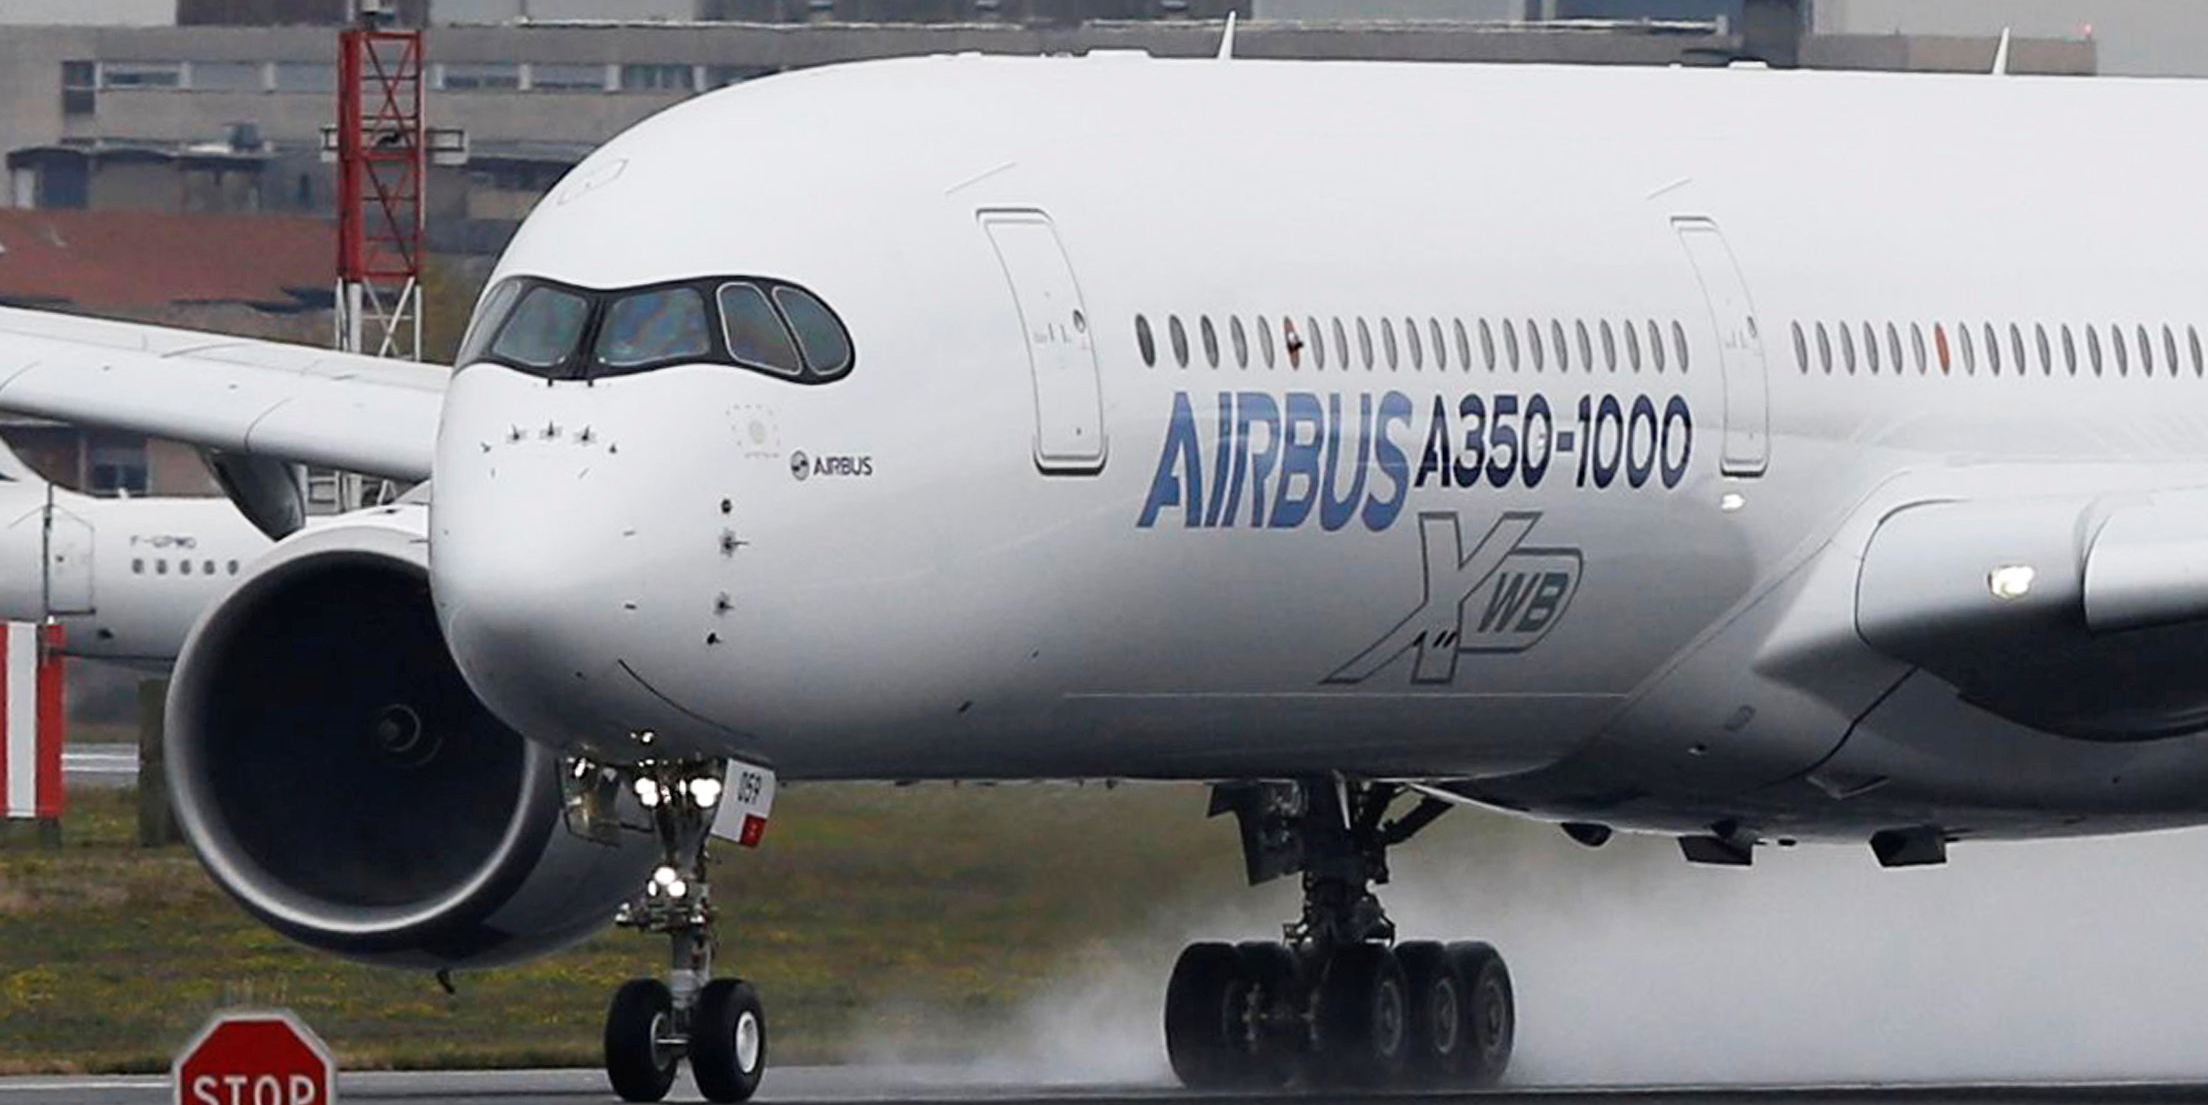 A Dacca, Emmanuel Macron fait état d'un « engagement » du Bangladesh pour acheter dix Airbus A350